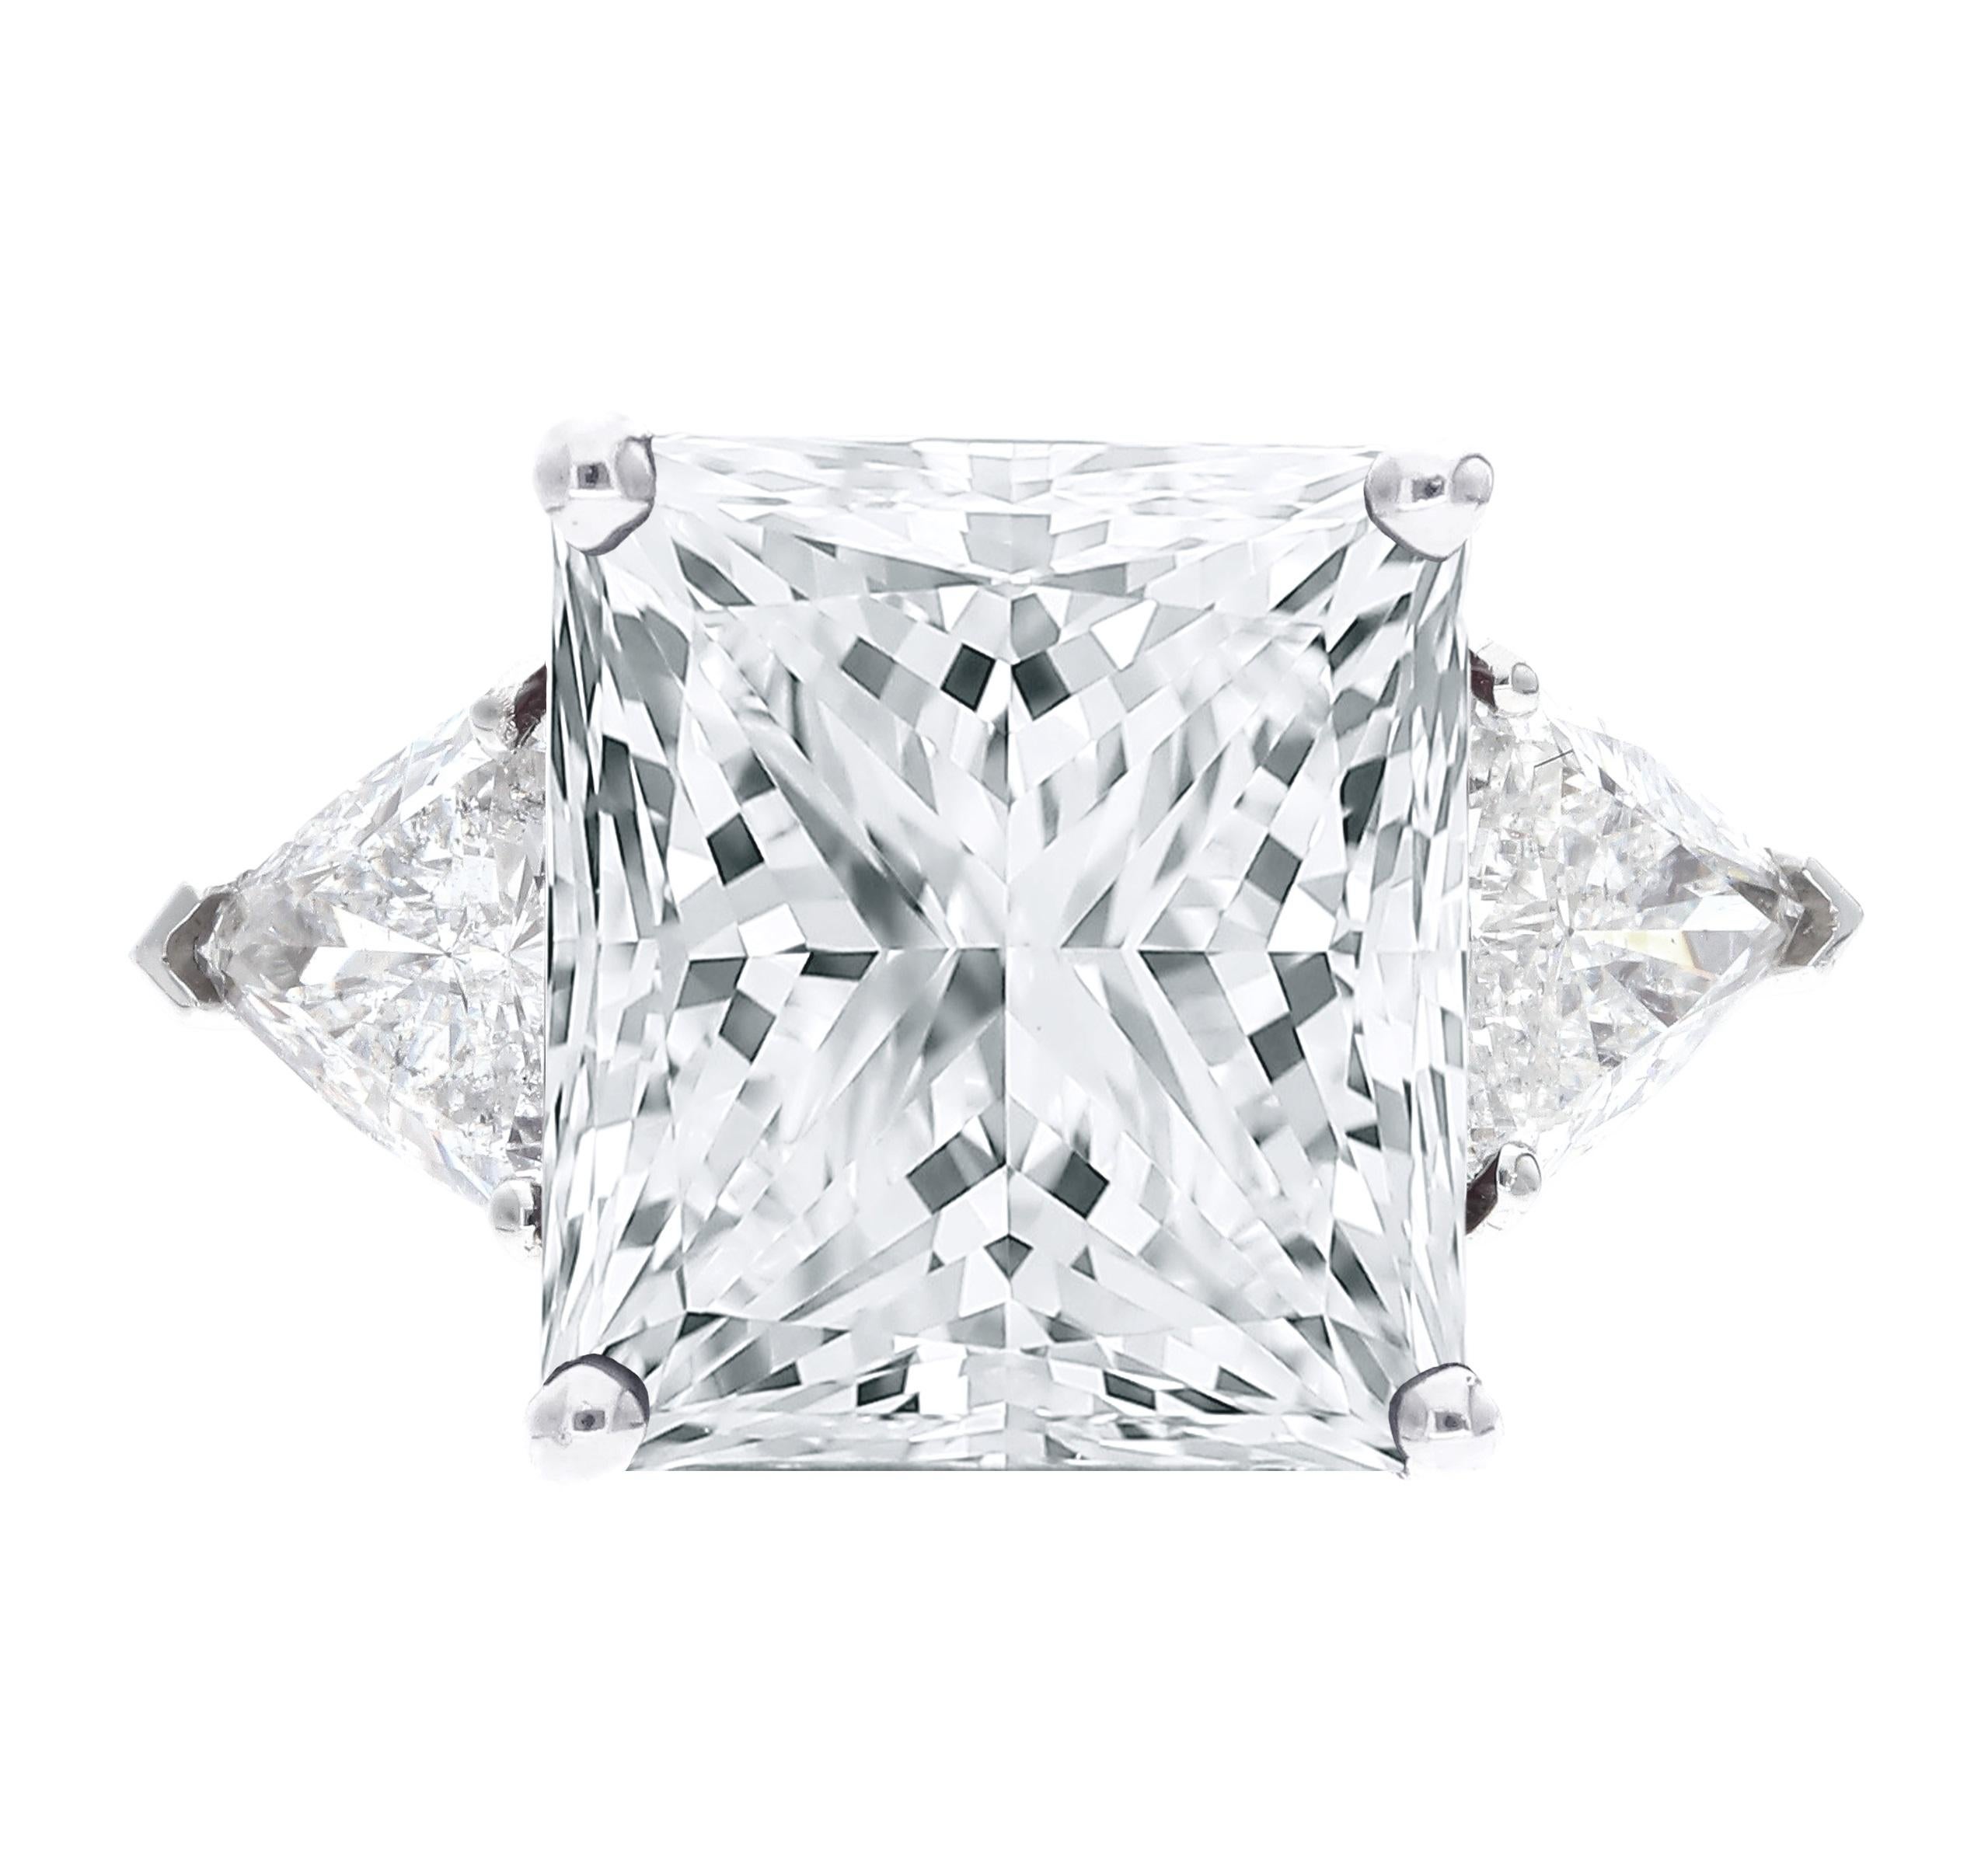 Cette superbe bague présente en son centre un magnifique diamant taille princesse de 4 carats, qui respire l'élégance et la sophistication. Flanqués de part et d'autre, deux exquis diamants de taille trillion ajoutent une allure unique et captivante